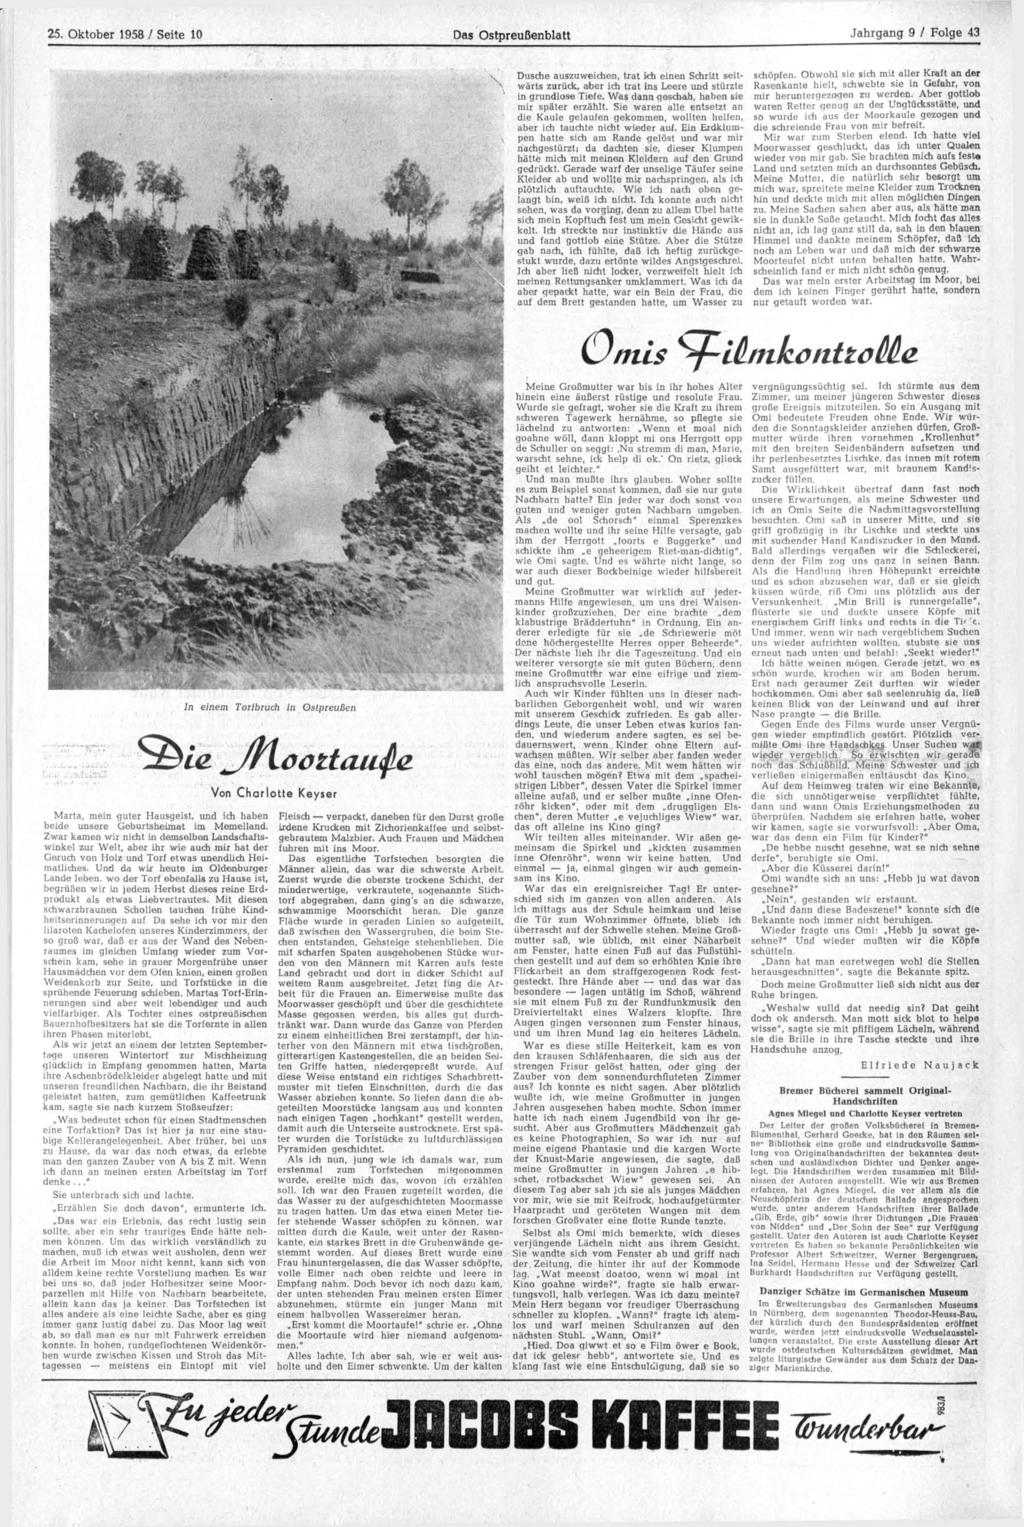 25. Oktober 1958 / Seite 10 Das Ostpreußenblatt Dusche auszuweichen, trat ich einen Schritt seitwärts zurück, aber ich trat ins Leere und stürzte in grundlose Tiefe.